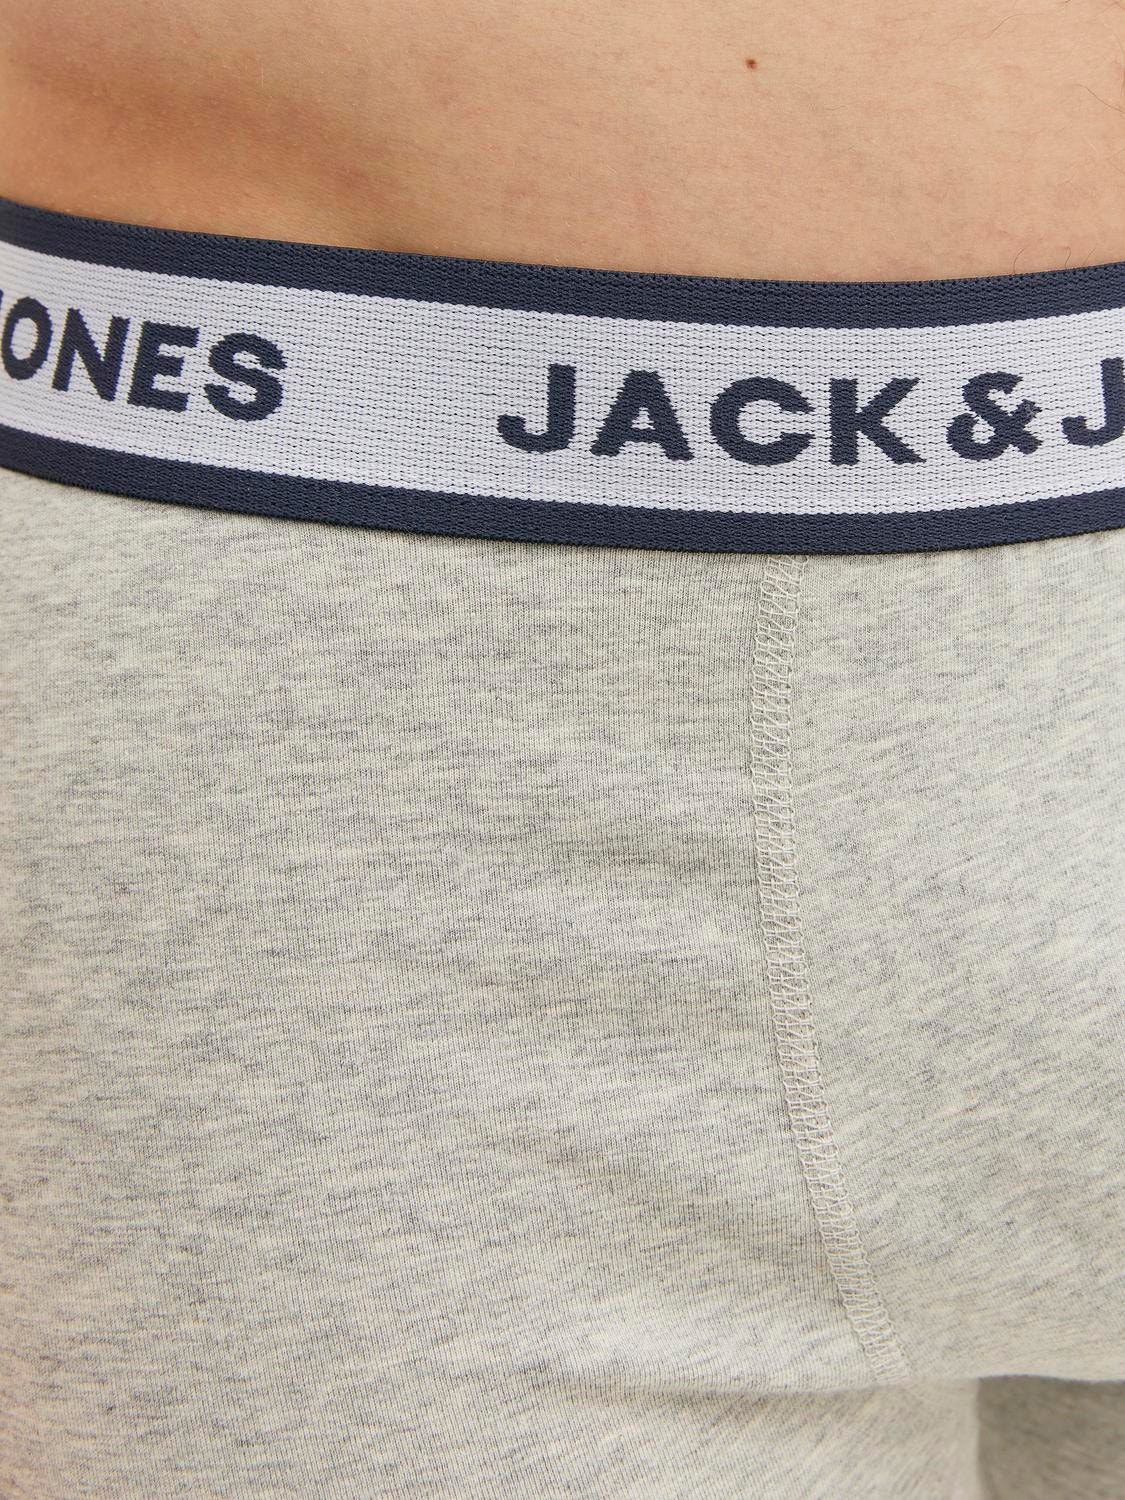 Jack & Jones®  3-PACK FLORAL MICROFIBER BOXERS